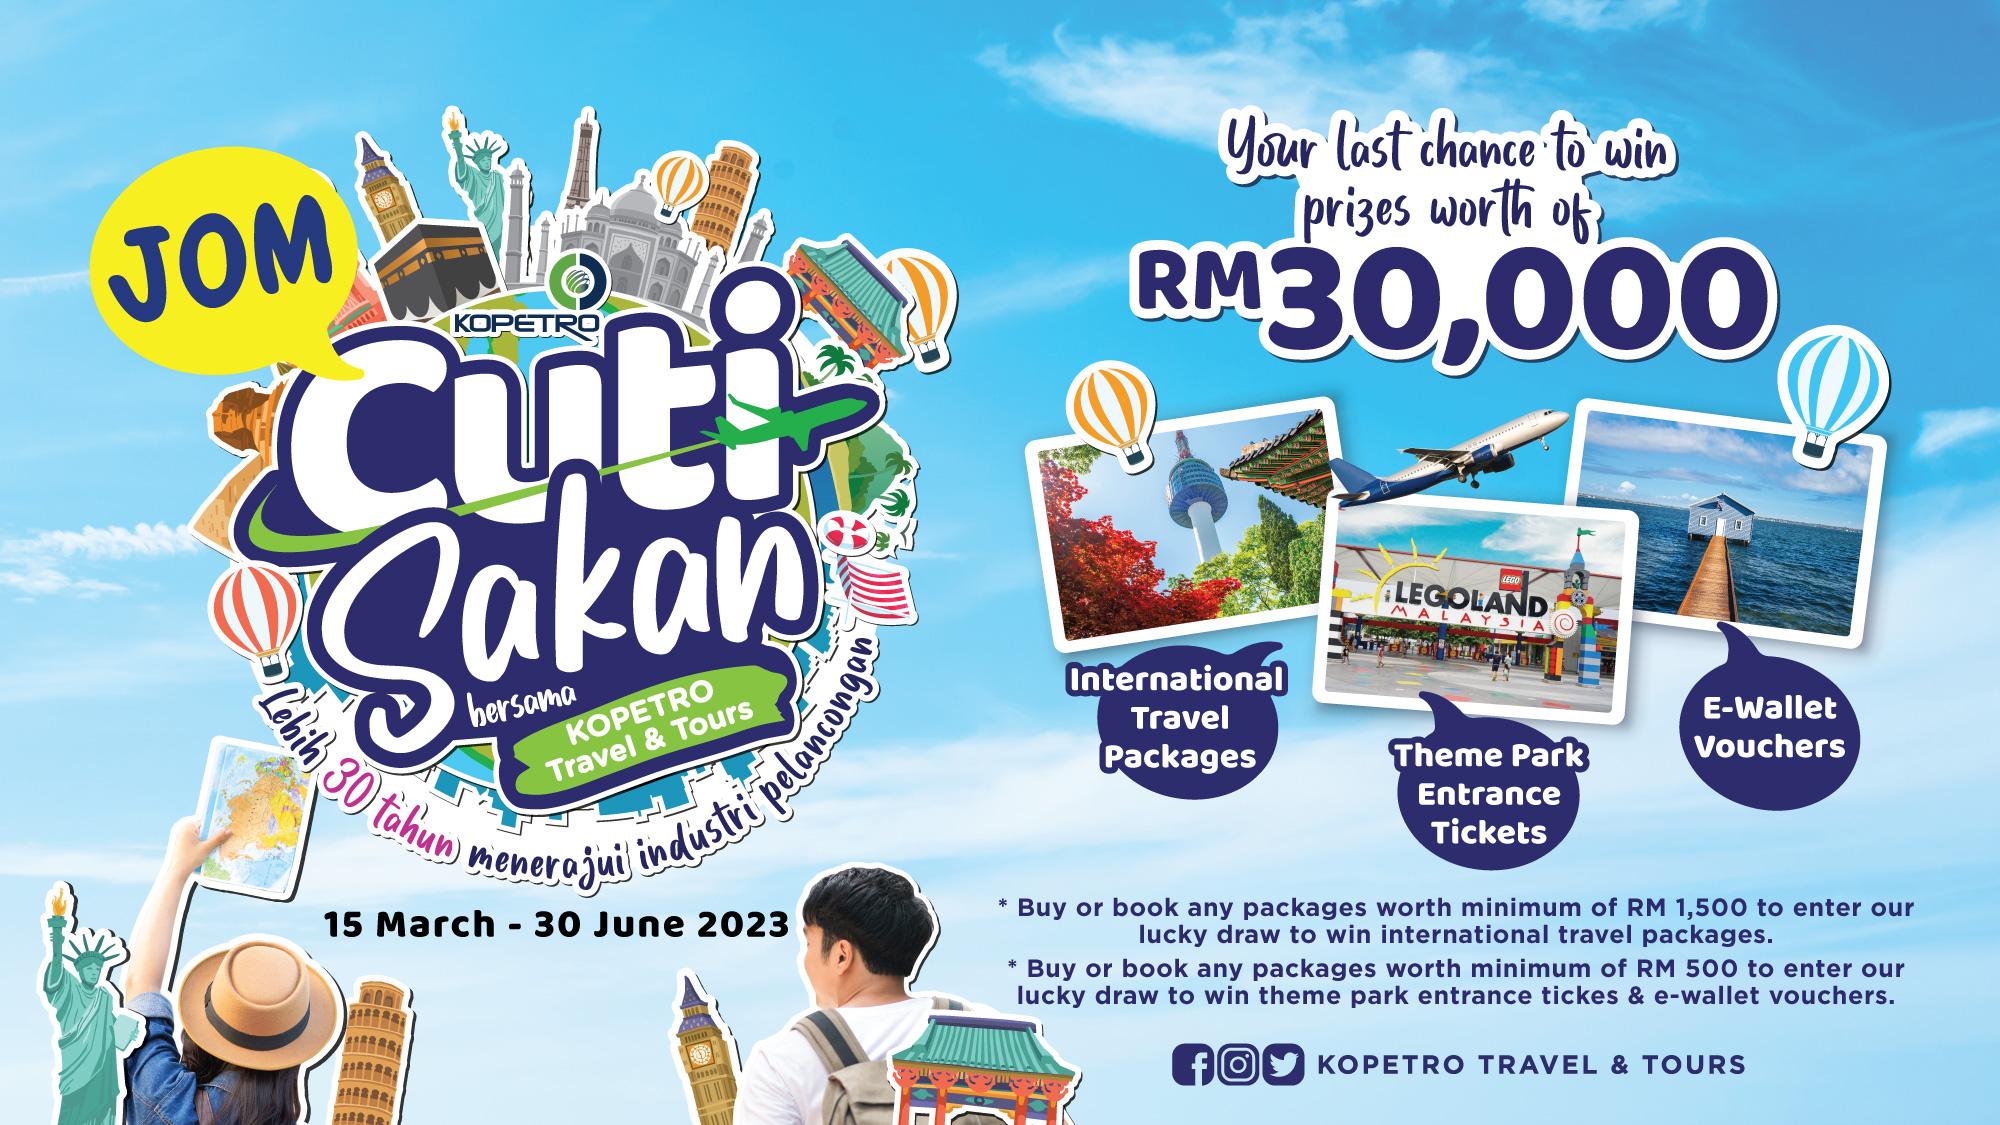 通过KOPETRO Travel 的’Jom Cuti Sakan’ 抓住机会赢取价值RM30,000 的奖品